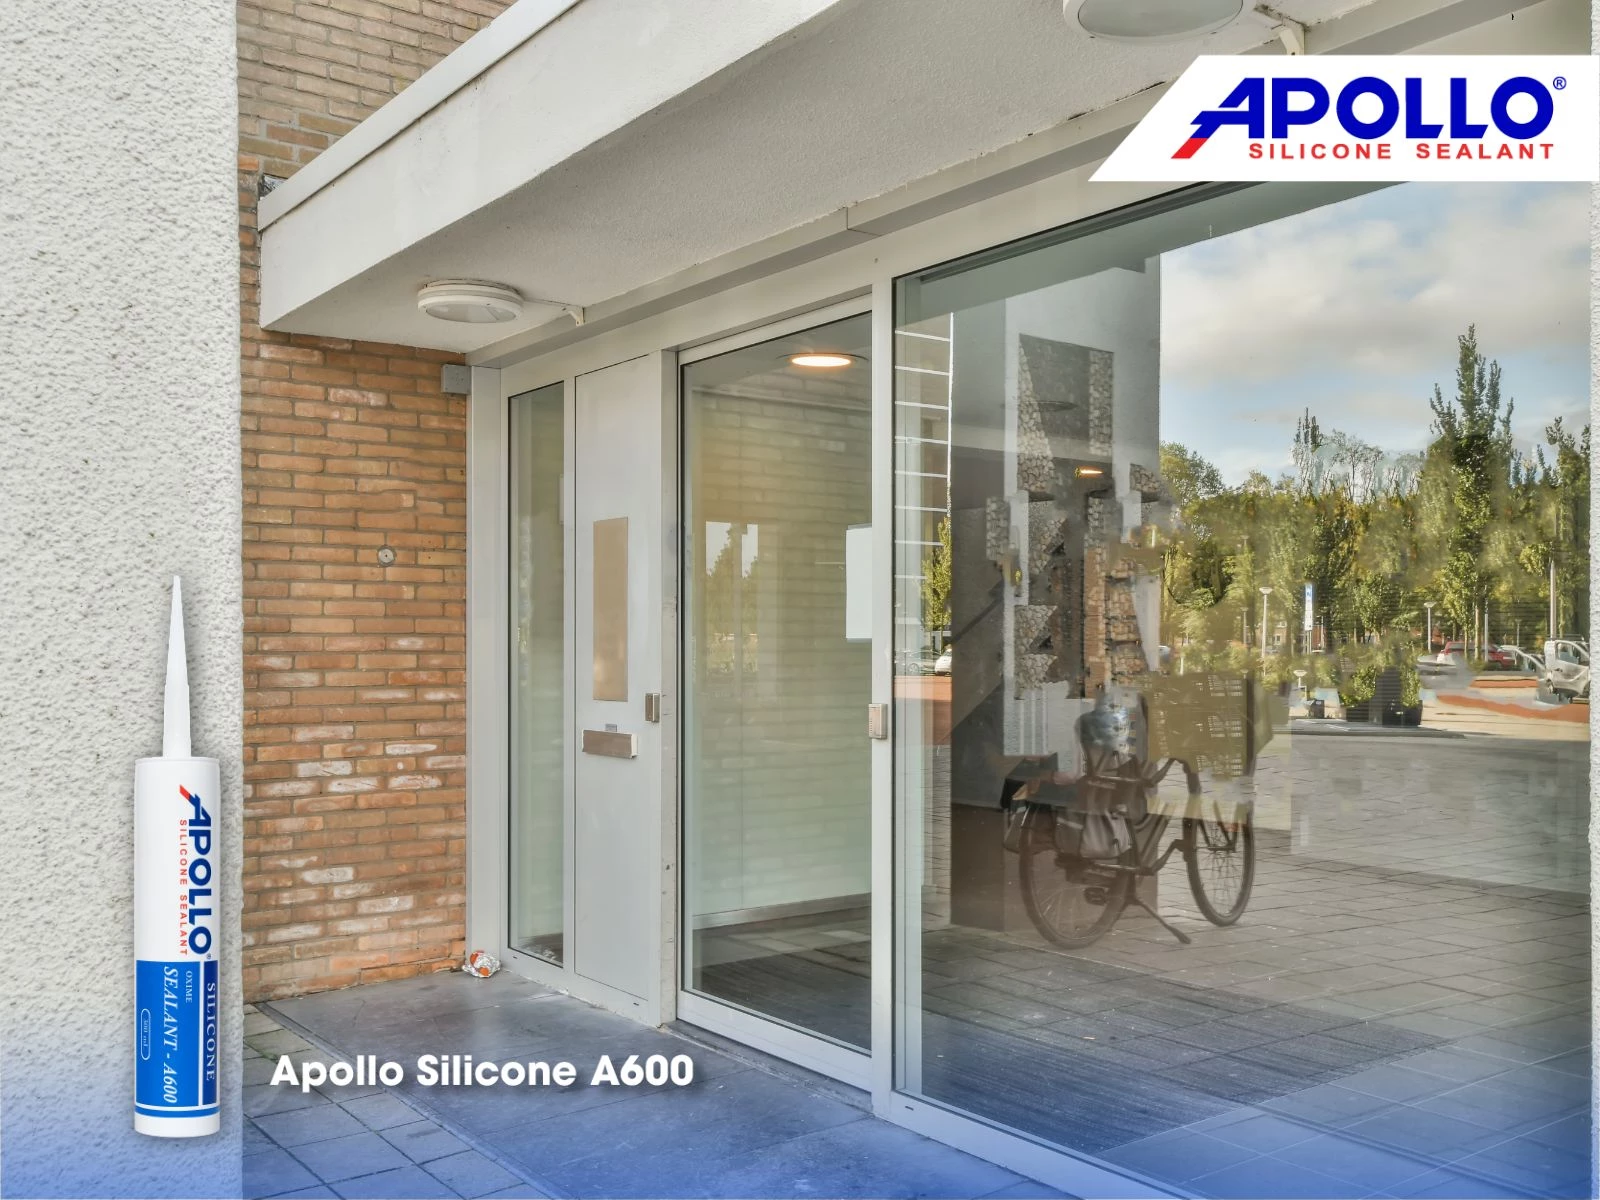 Apollo Silicone A600 phù hợp thi công tại các công trình kính cần yêu cầu tính thẩm mỹ như cửa hàng thời trang, quán cà phê…